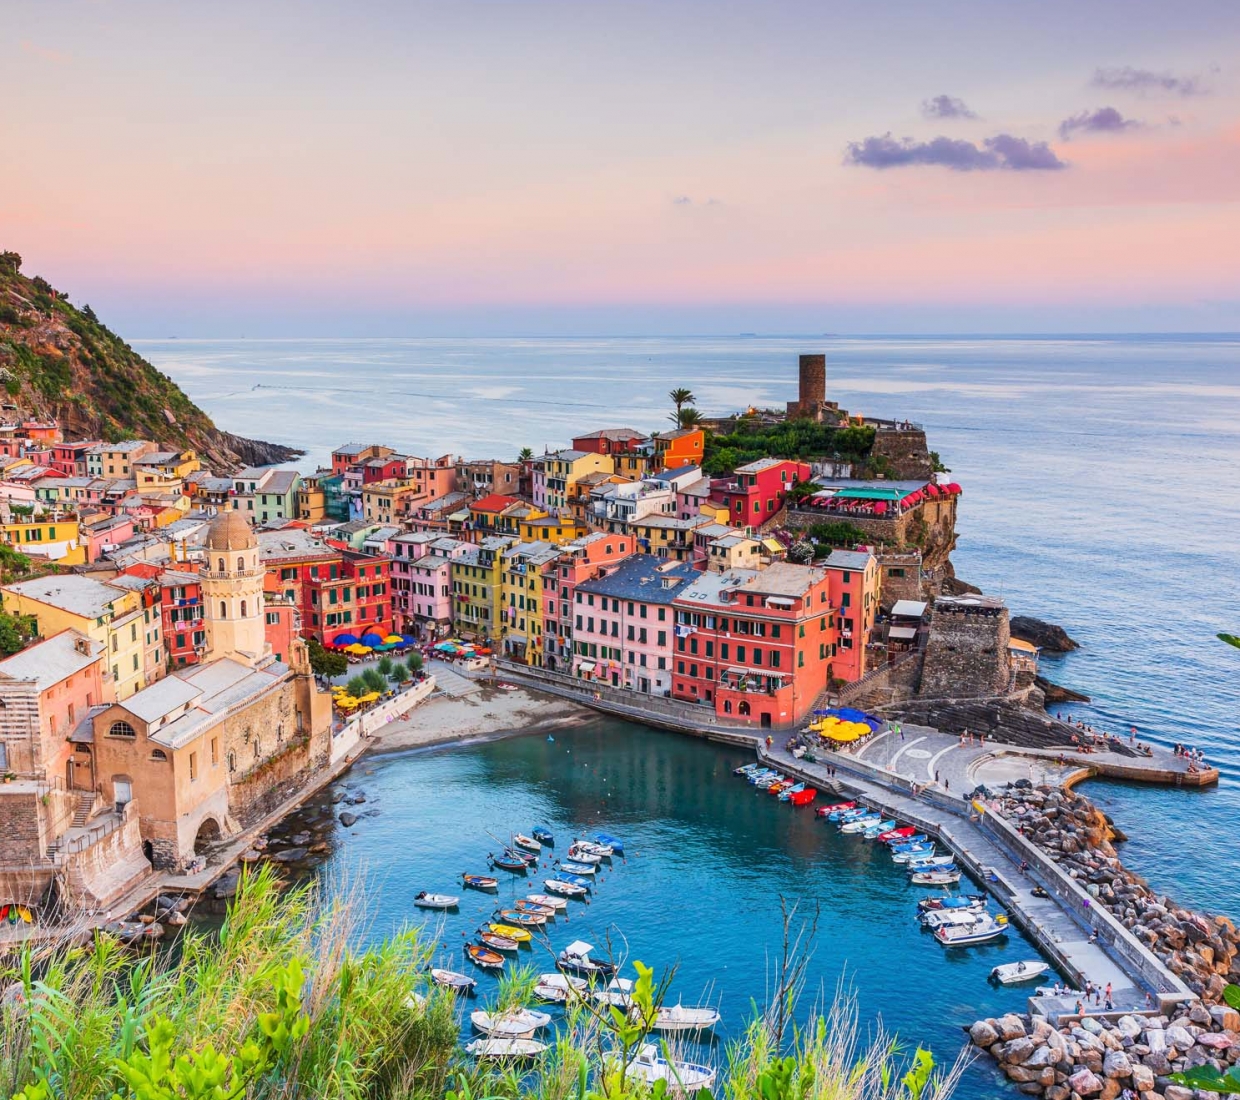 Seleção dos melhores e mais bonitos hotéis e casas de férias em Liguria